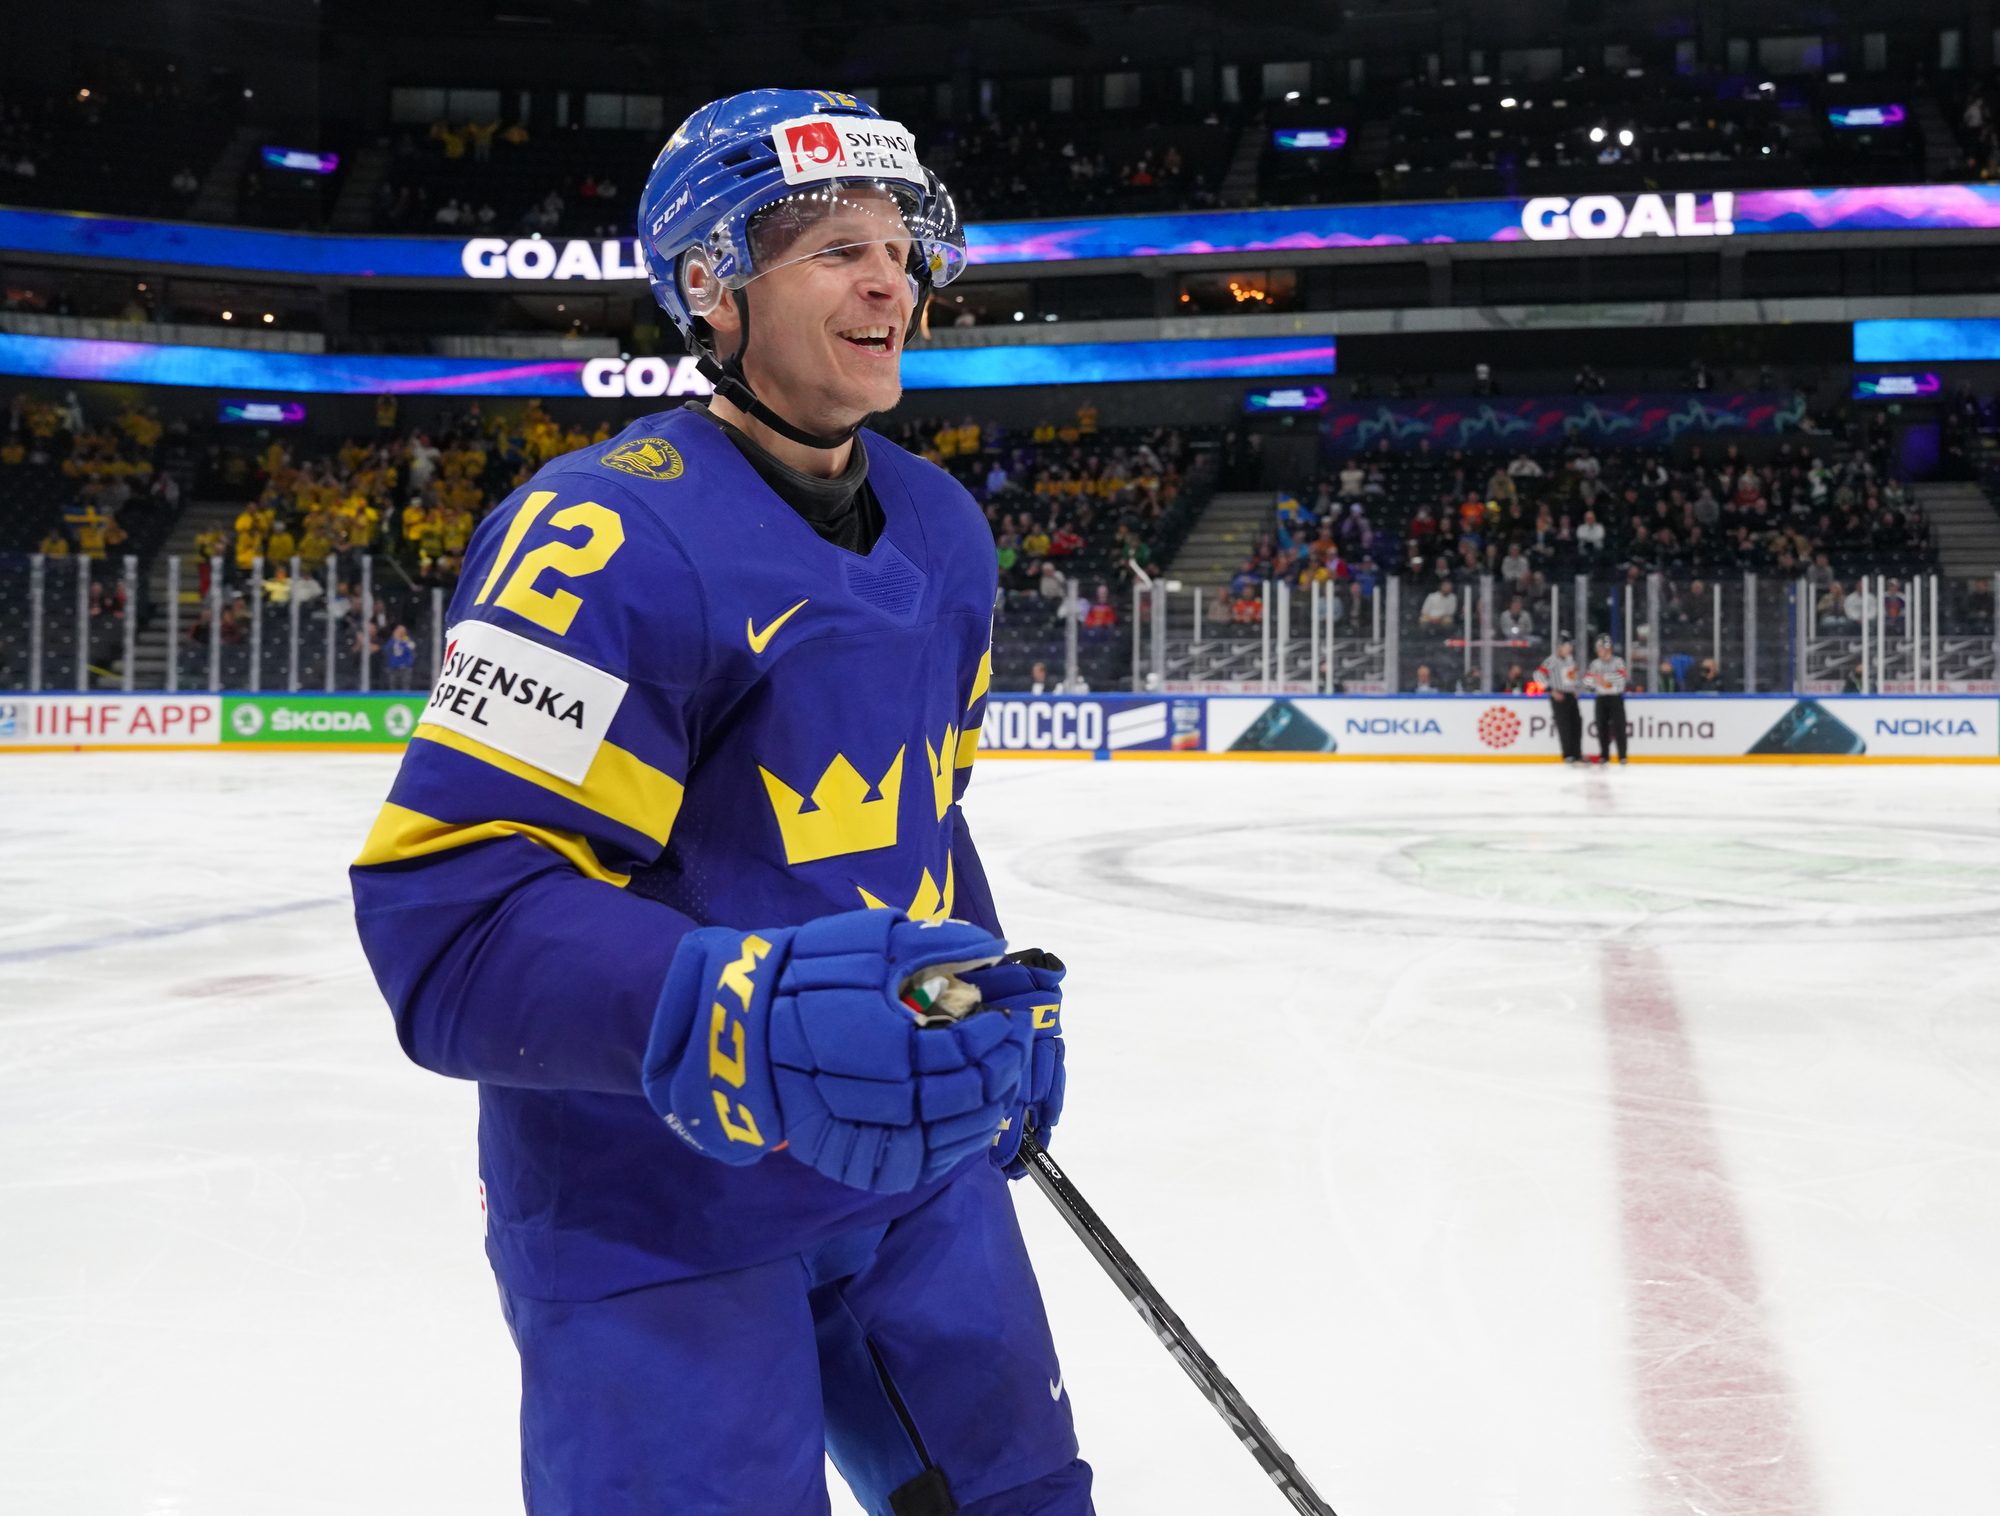 IIHF - Nylander makes scoring start